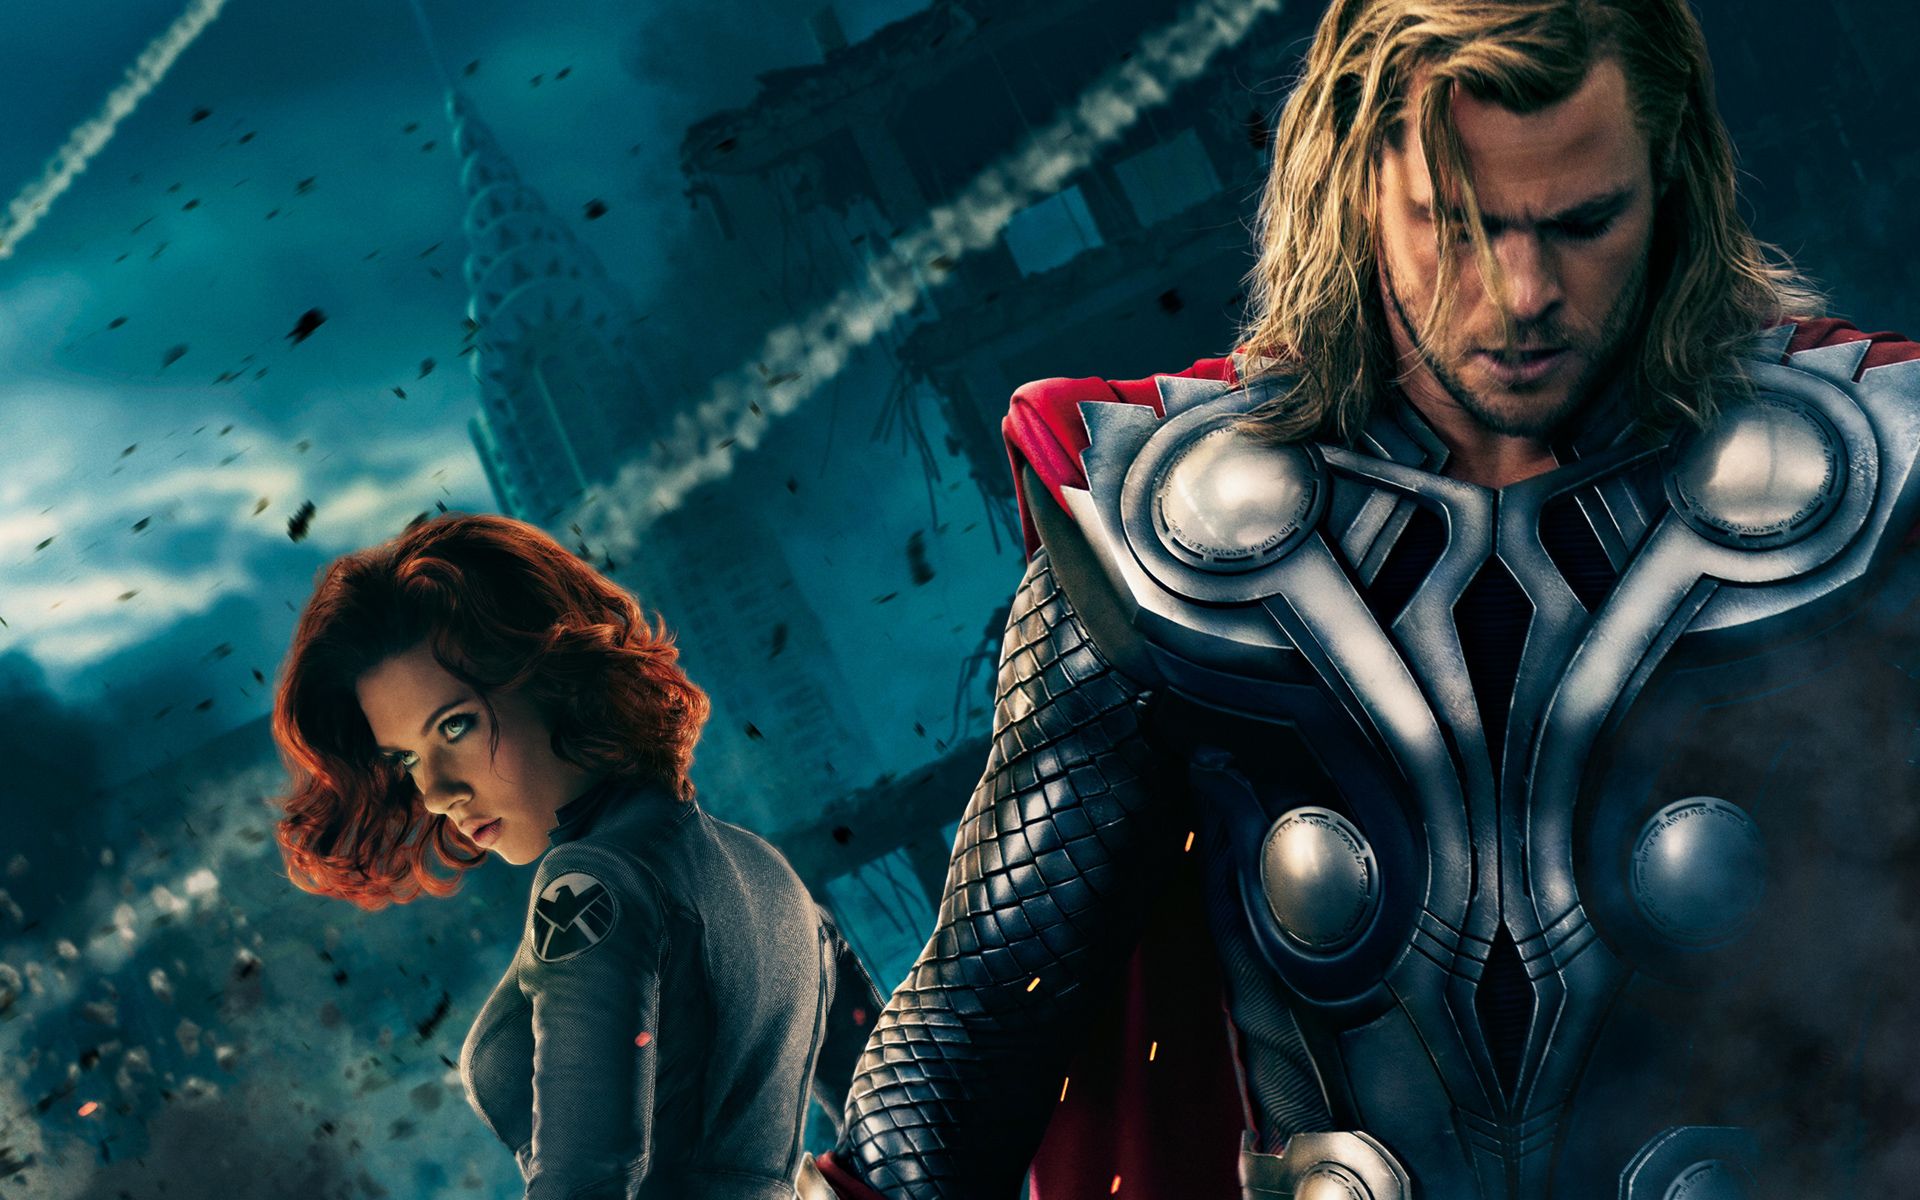 Thor in The Avengers Wallpaper Windows Desktop Wallpaper. Movie